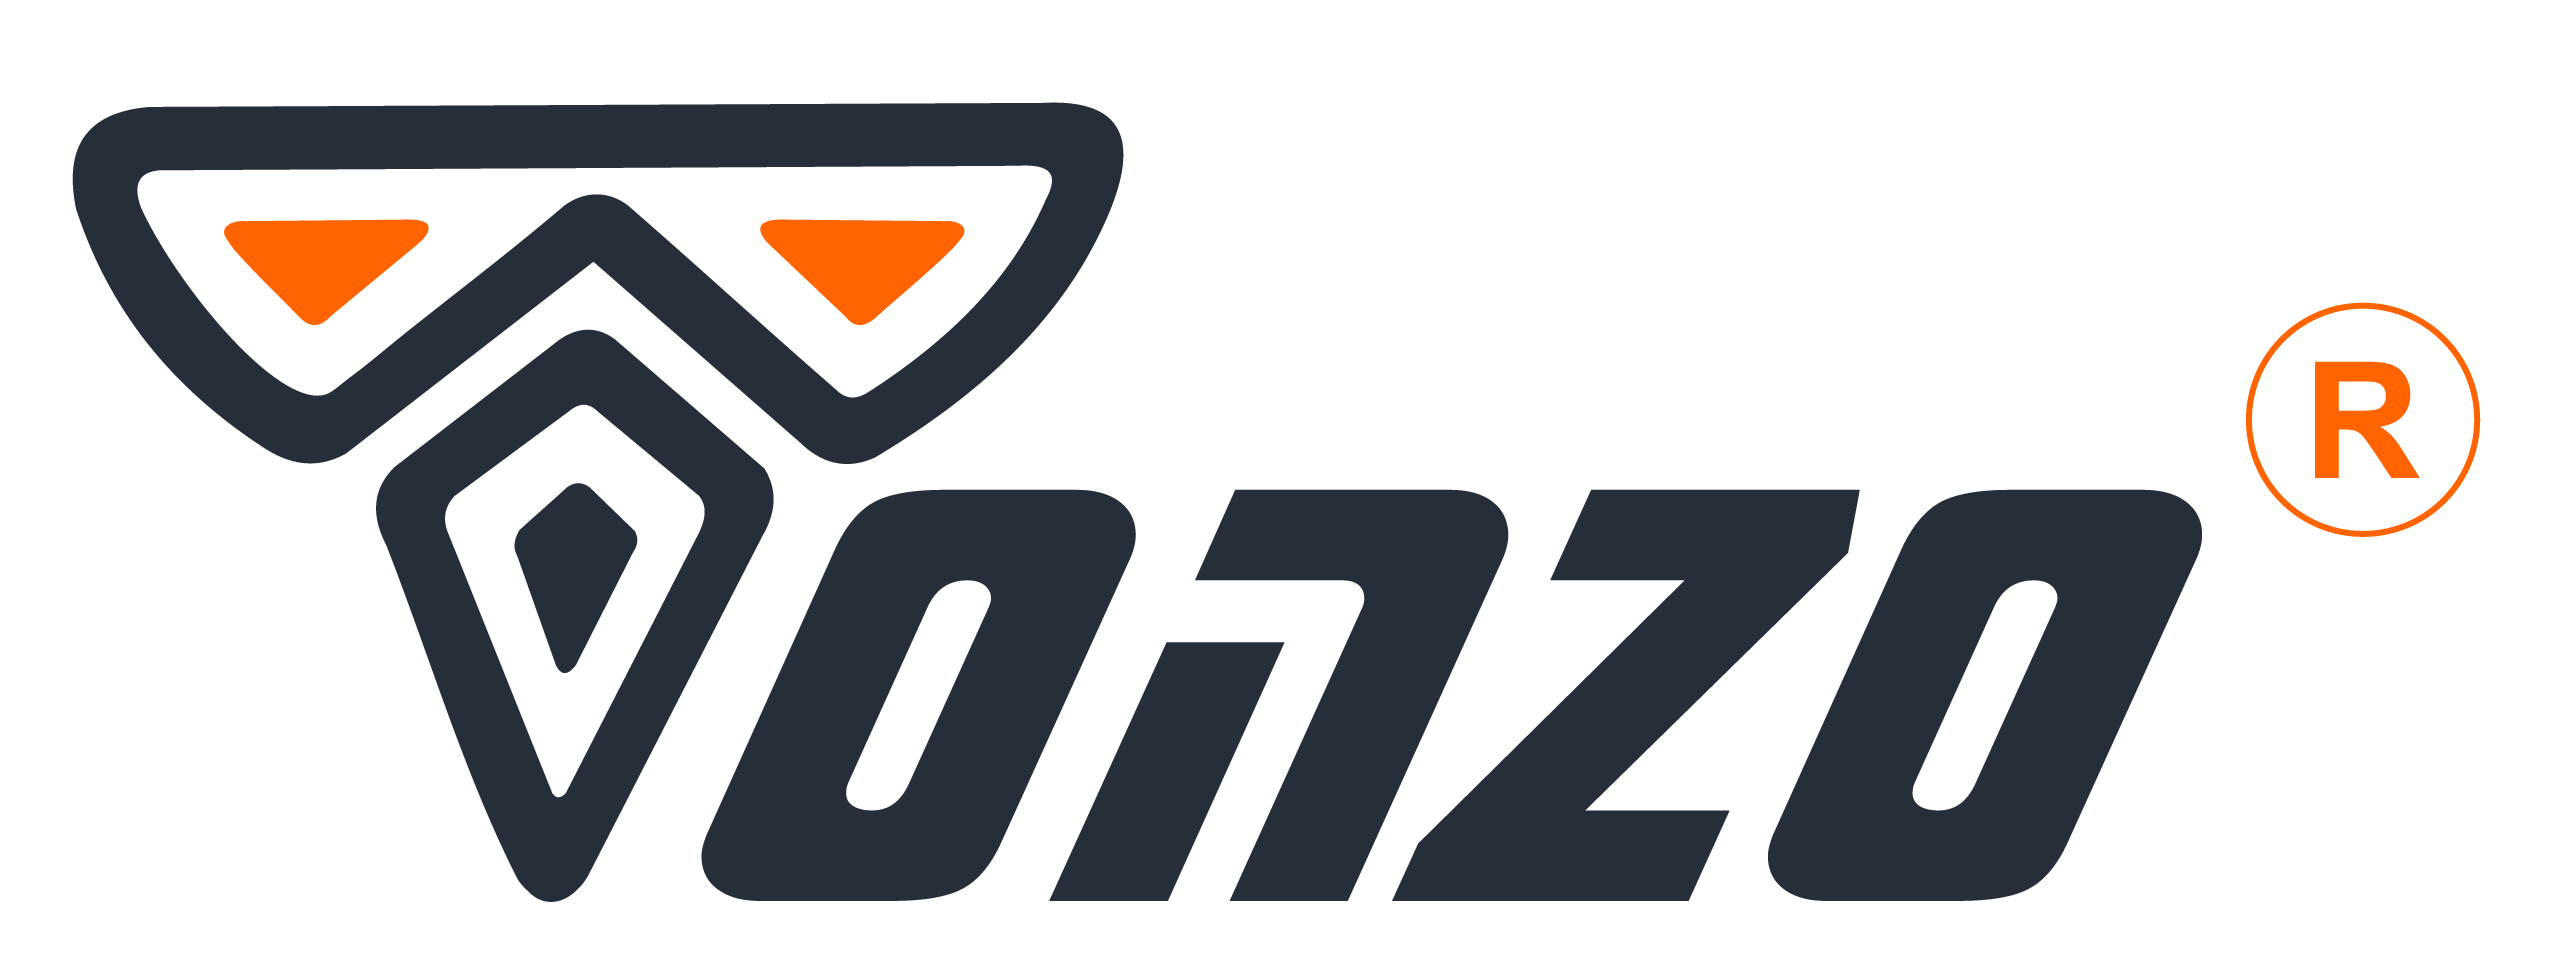 tonzo logo